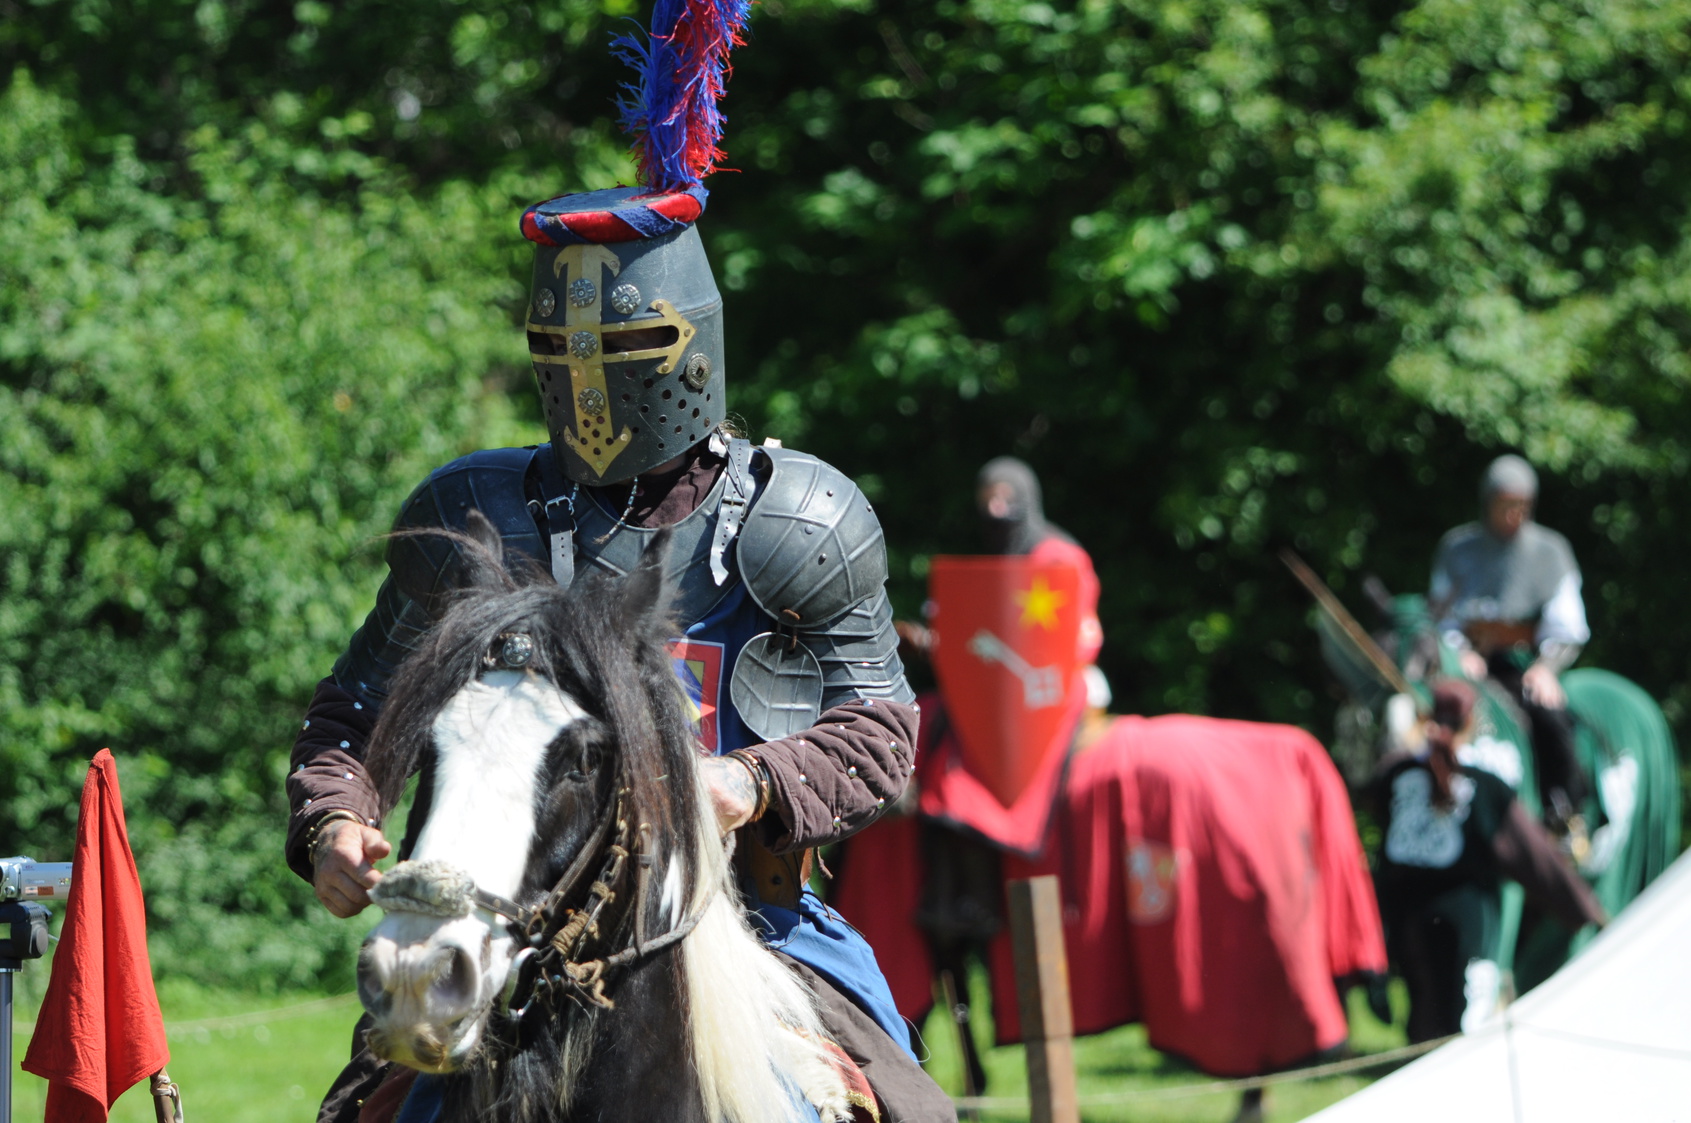 Au Moyen Âge, les tournois à cheval, très spectaculaires, étaient très prisés.&nbsp;© falpat86, fotolia